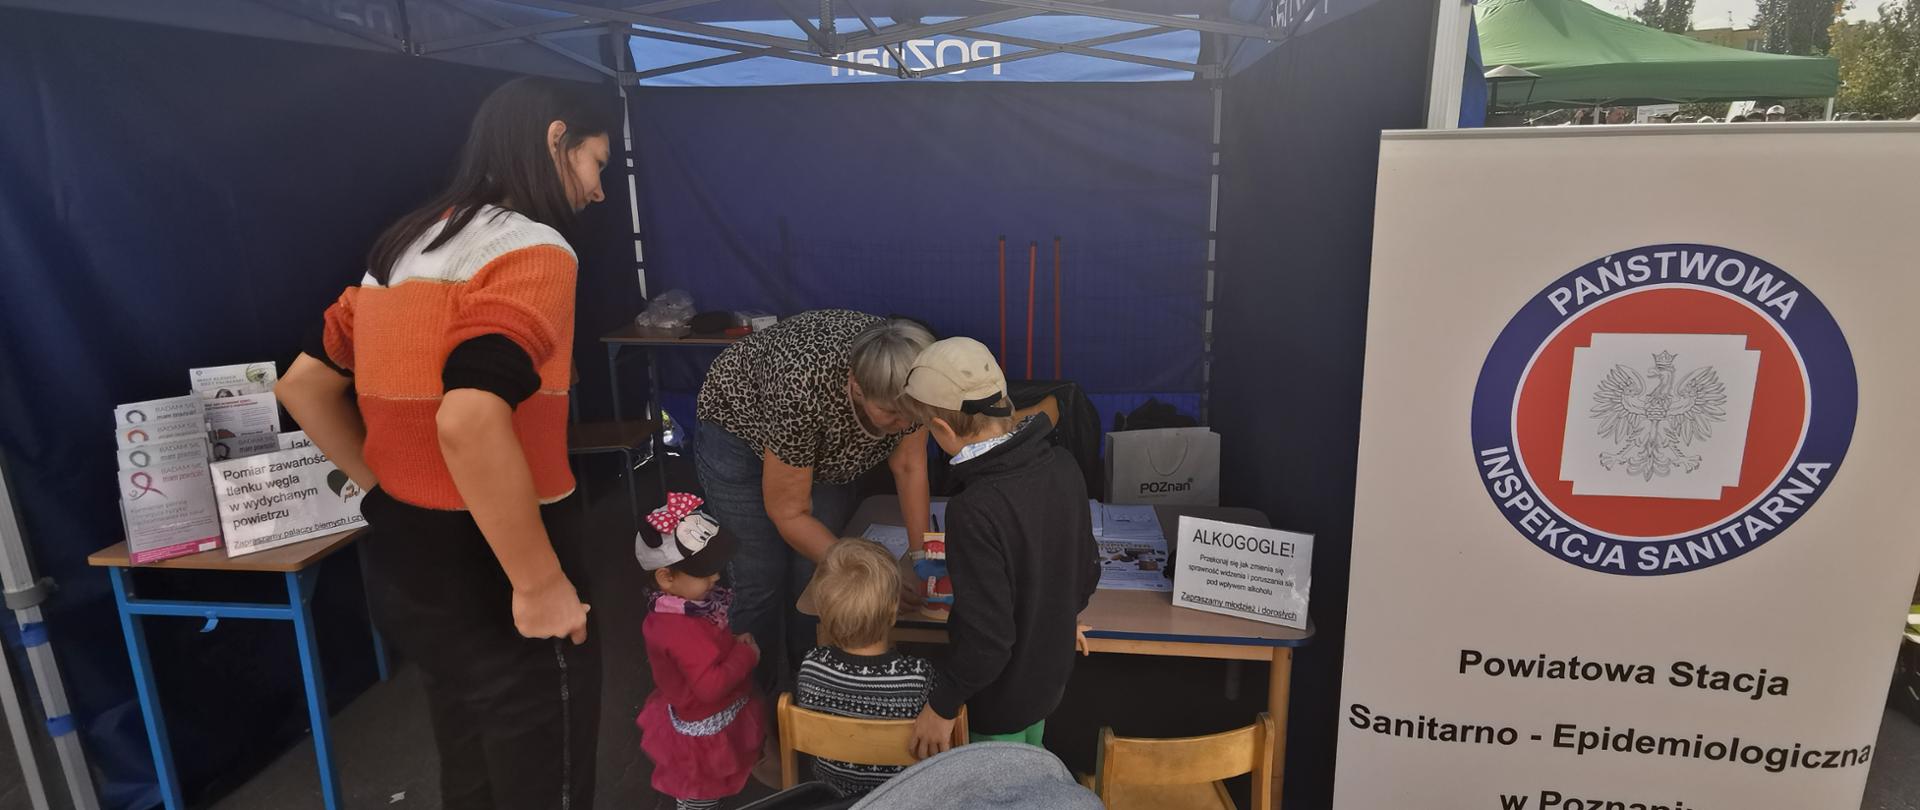 Na stoisku festynowym grupa dzieci uczestniczy w pokazie właściwego szczotkowania zębów, po prawej namiotu stronie stoi baner z logo Państwowej Inspekcji Sanitarnej
